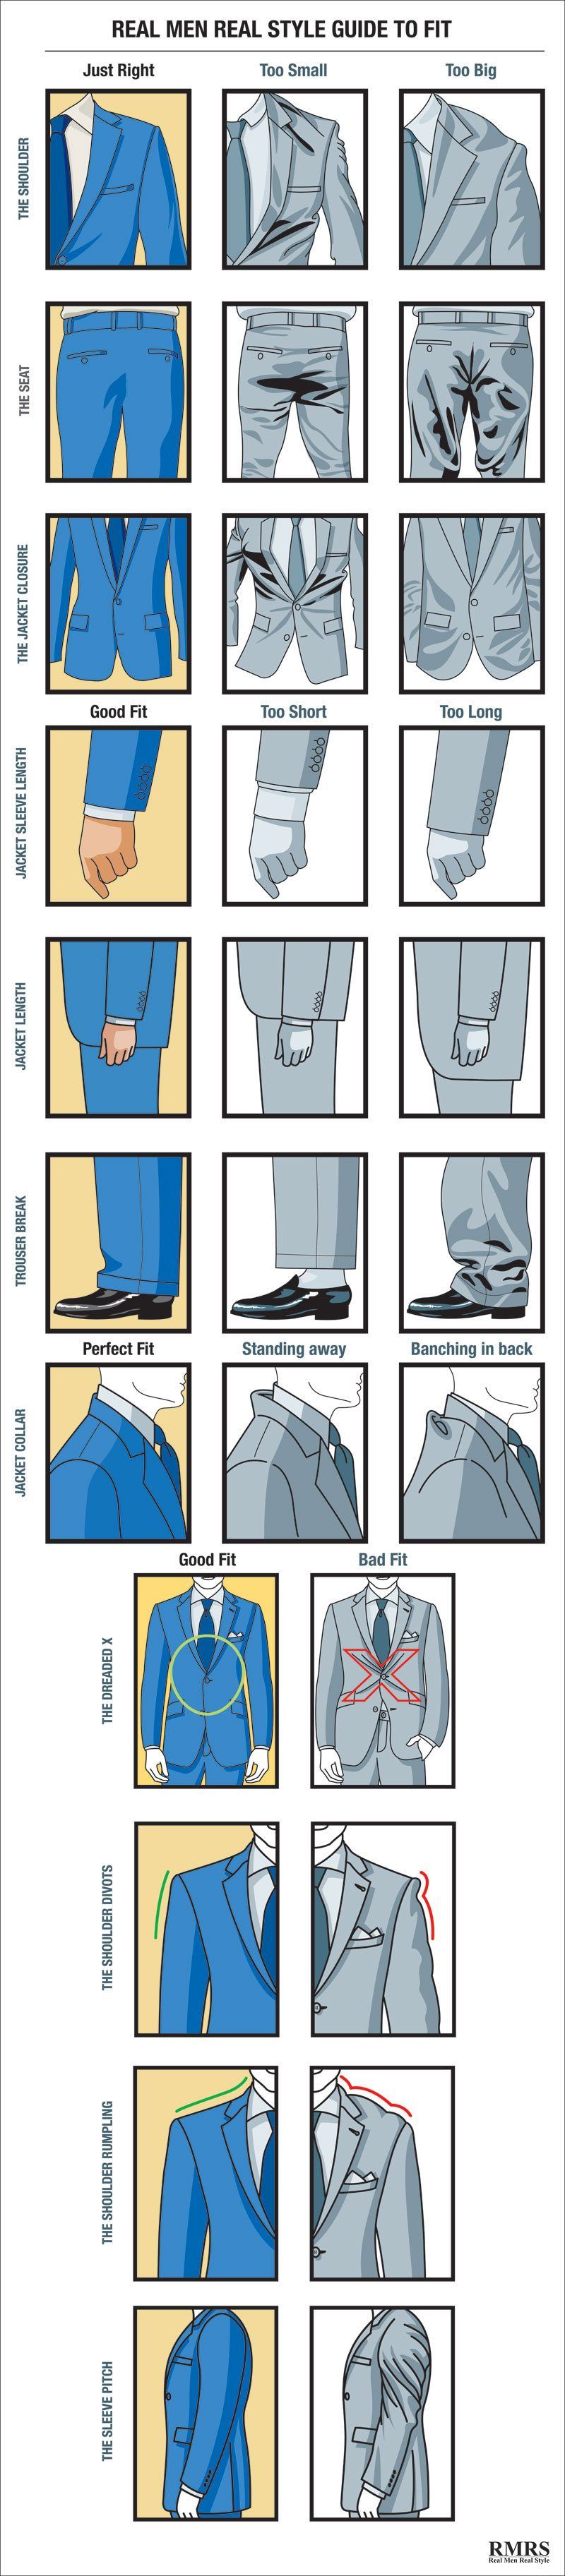 Cómo debe quedar el traje de un hombre | Guía de ajuste visual del traje | Tabla de trajes de ajuste adecuado